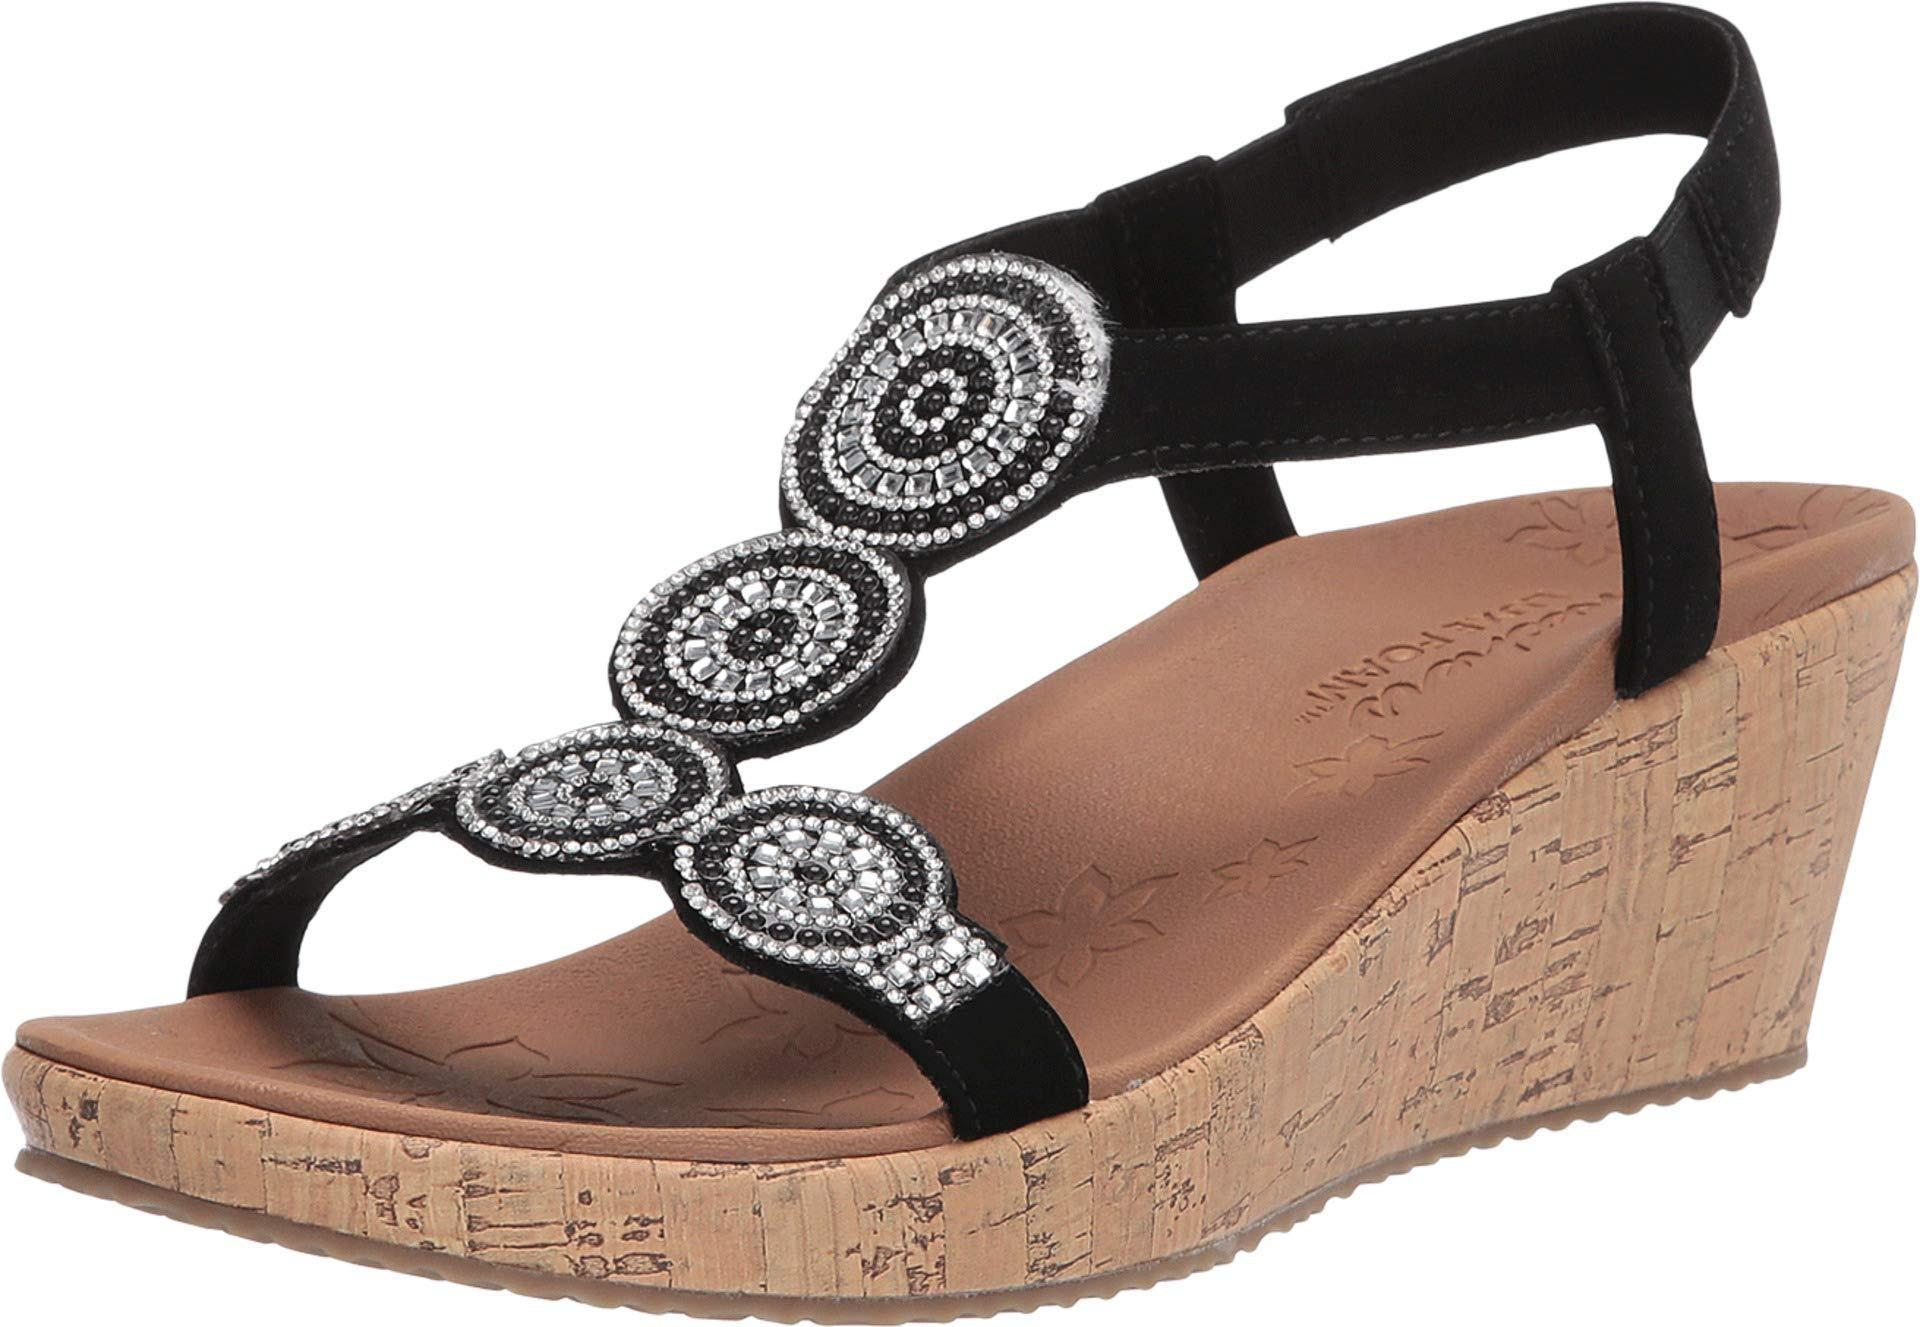 Skechers Beverlee-date Glam Sandal Wedge Black - Lyst